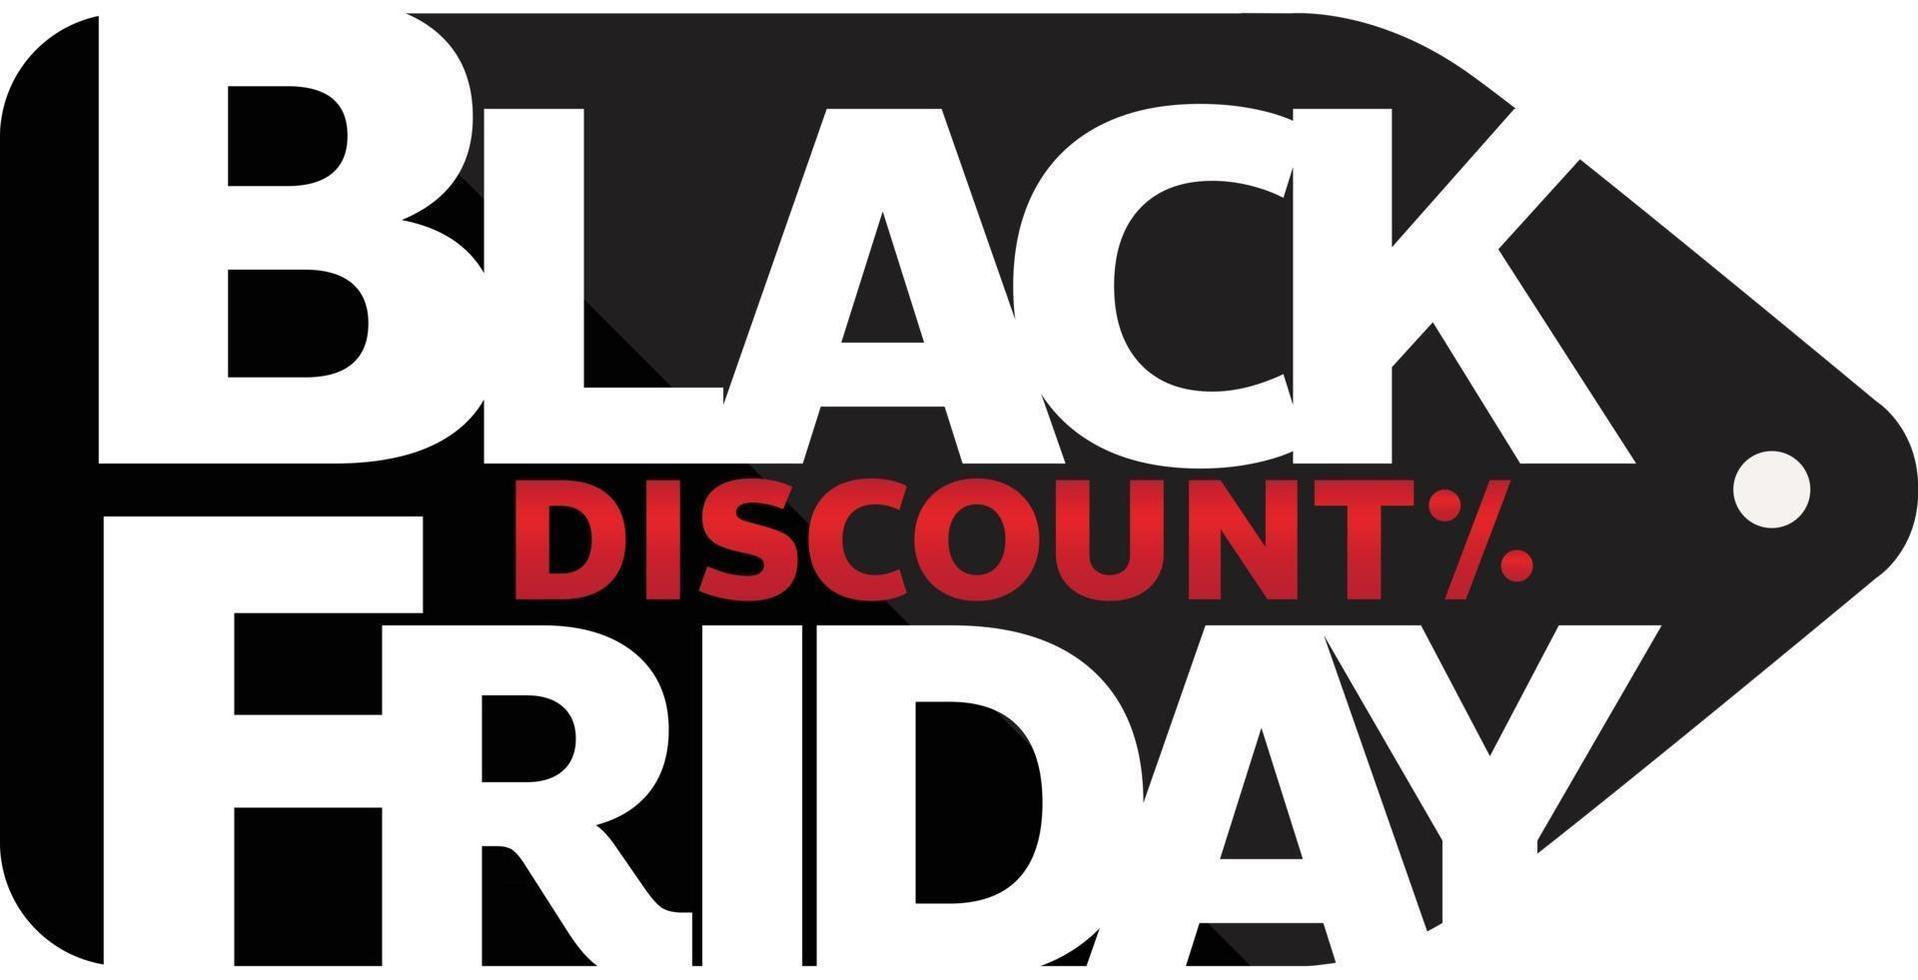 blackfriday sale winkel promotie tag ontwerp voor marketing vector